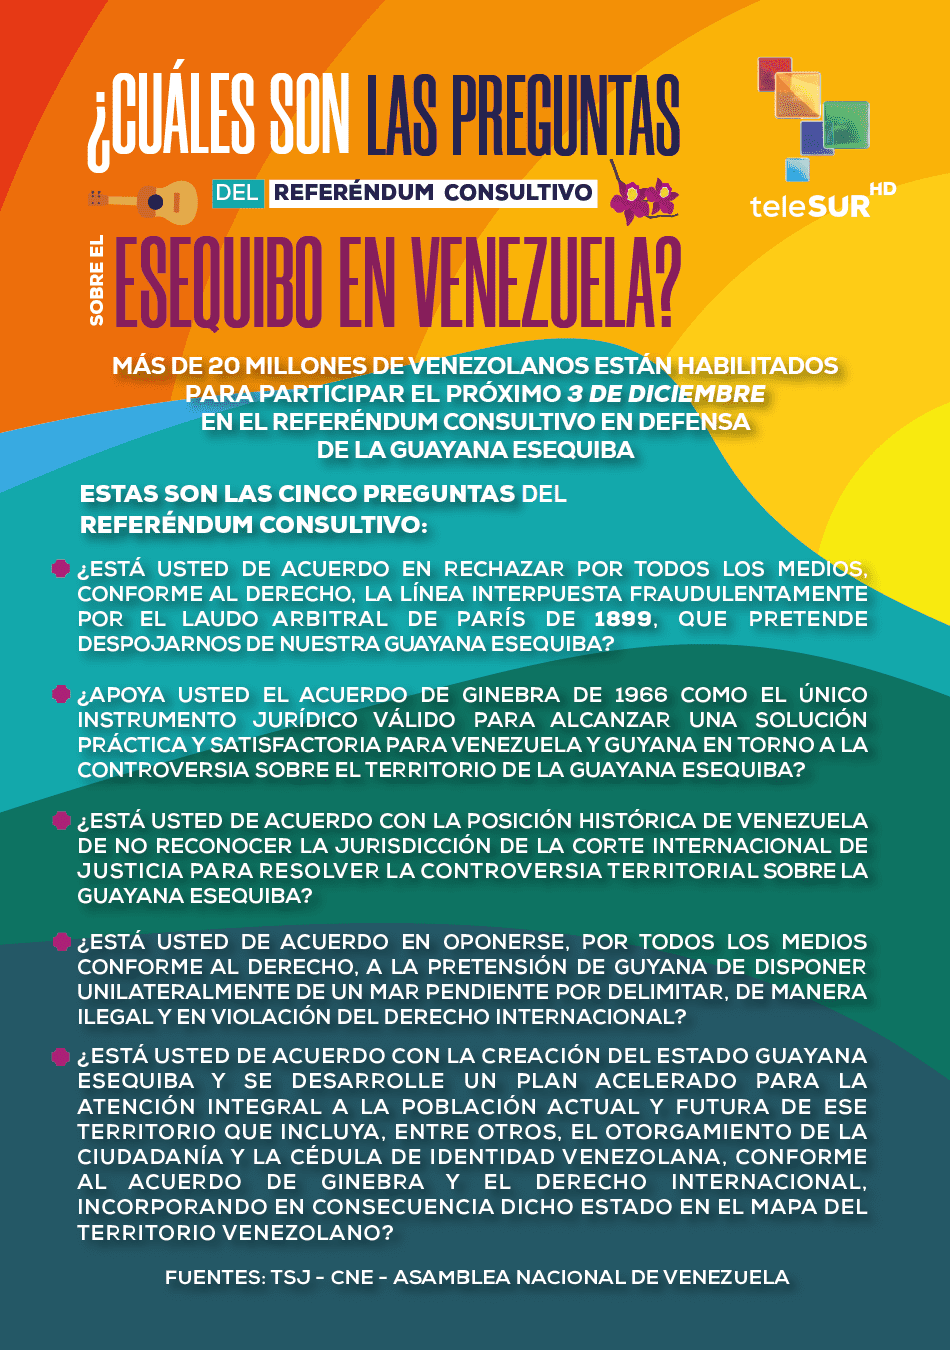 Referéndum consultivo sobre el Esequibo en Venezuela